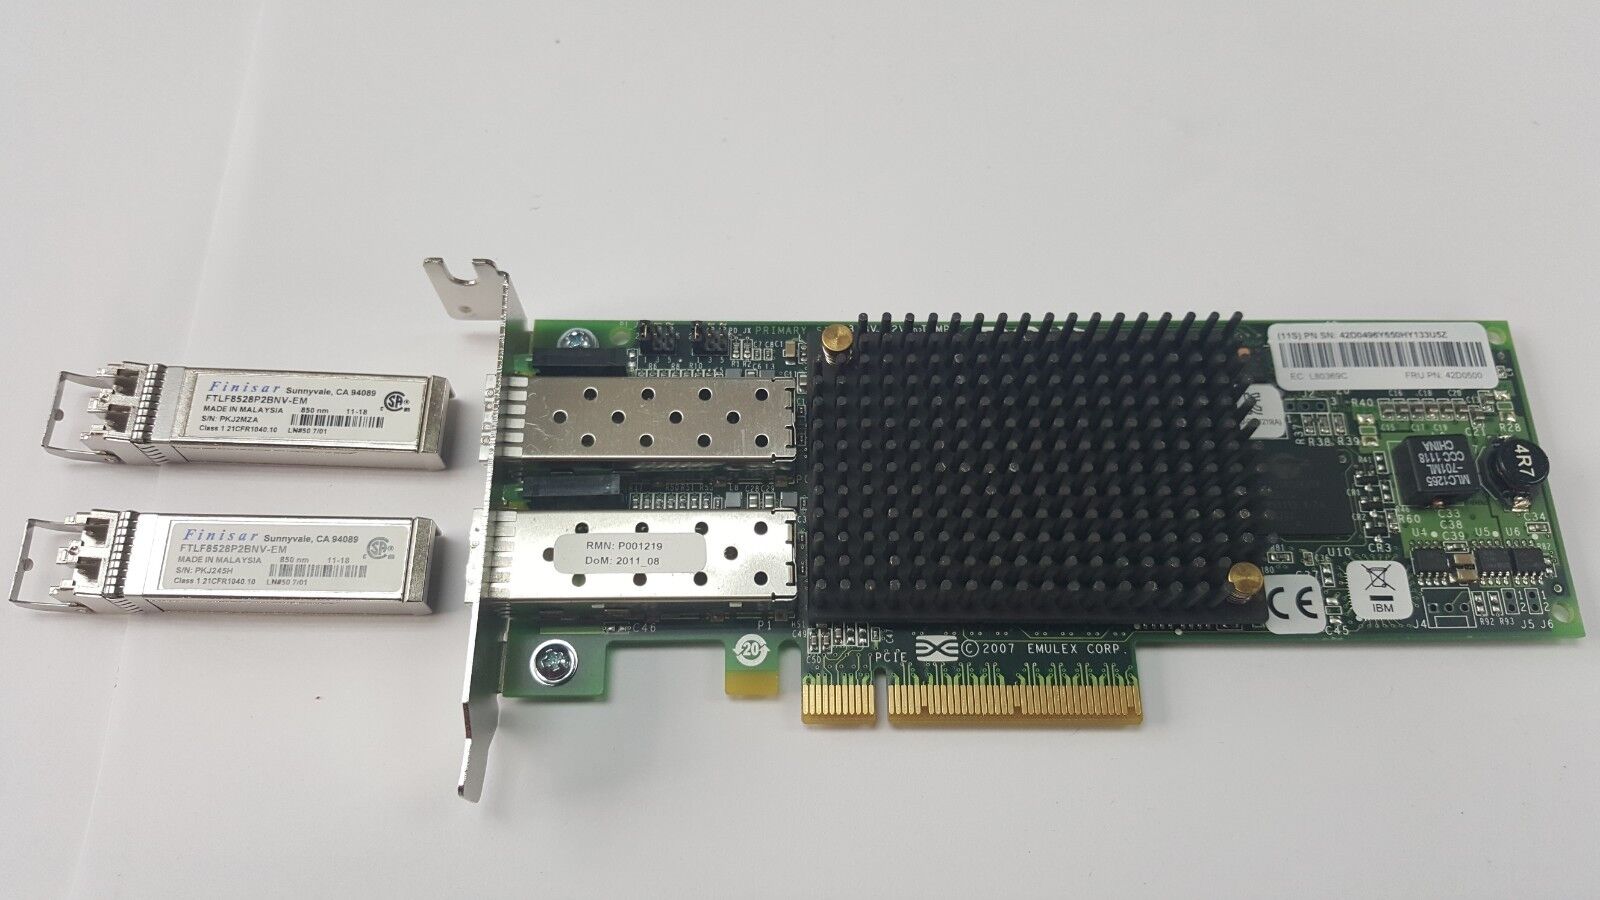 Genuine IBM Emulex L80369C FRU 42D0500 Dual Port PCI-E Adapter Card TESTED